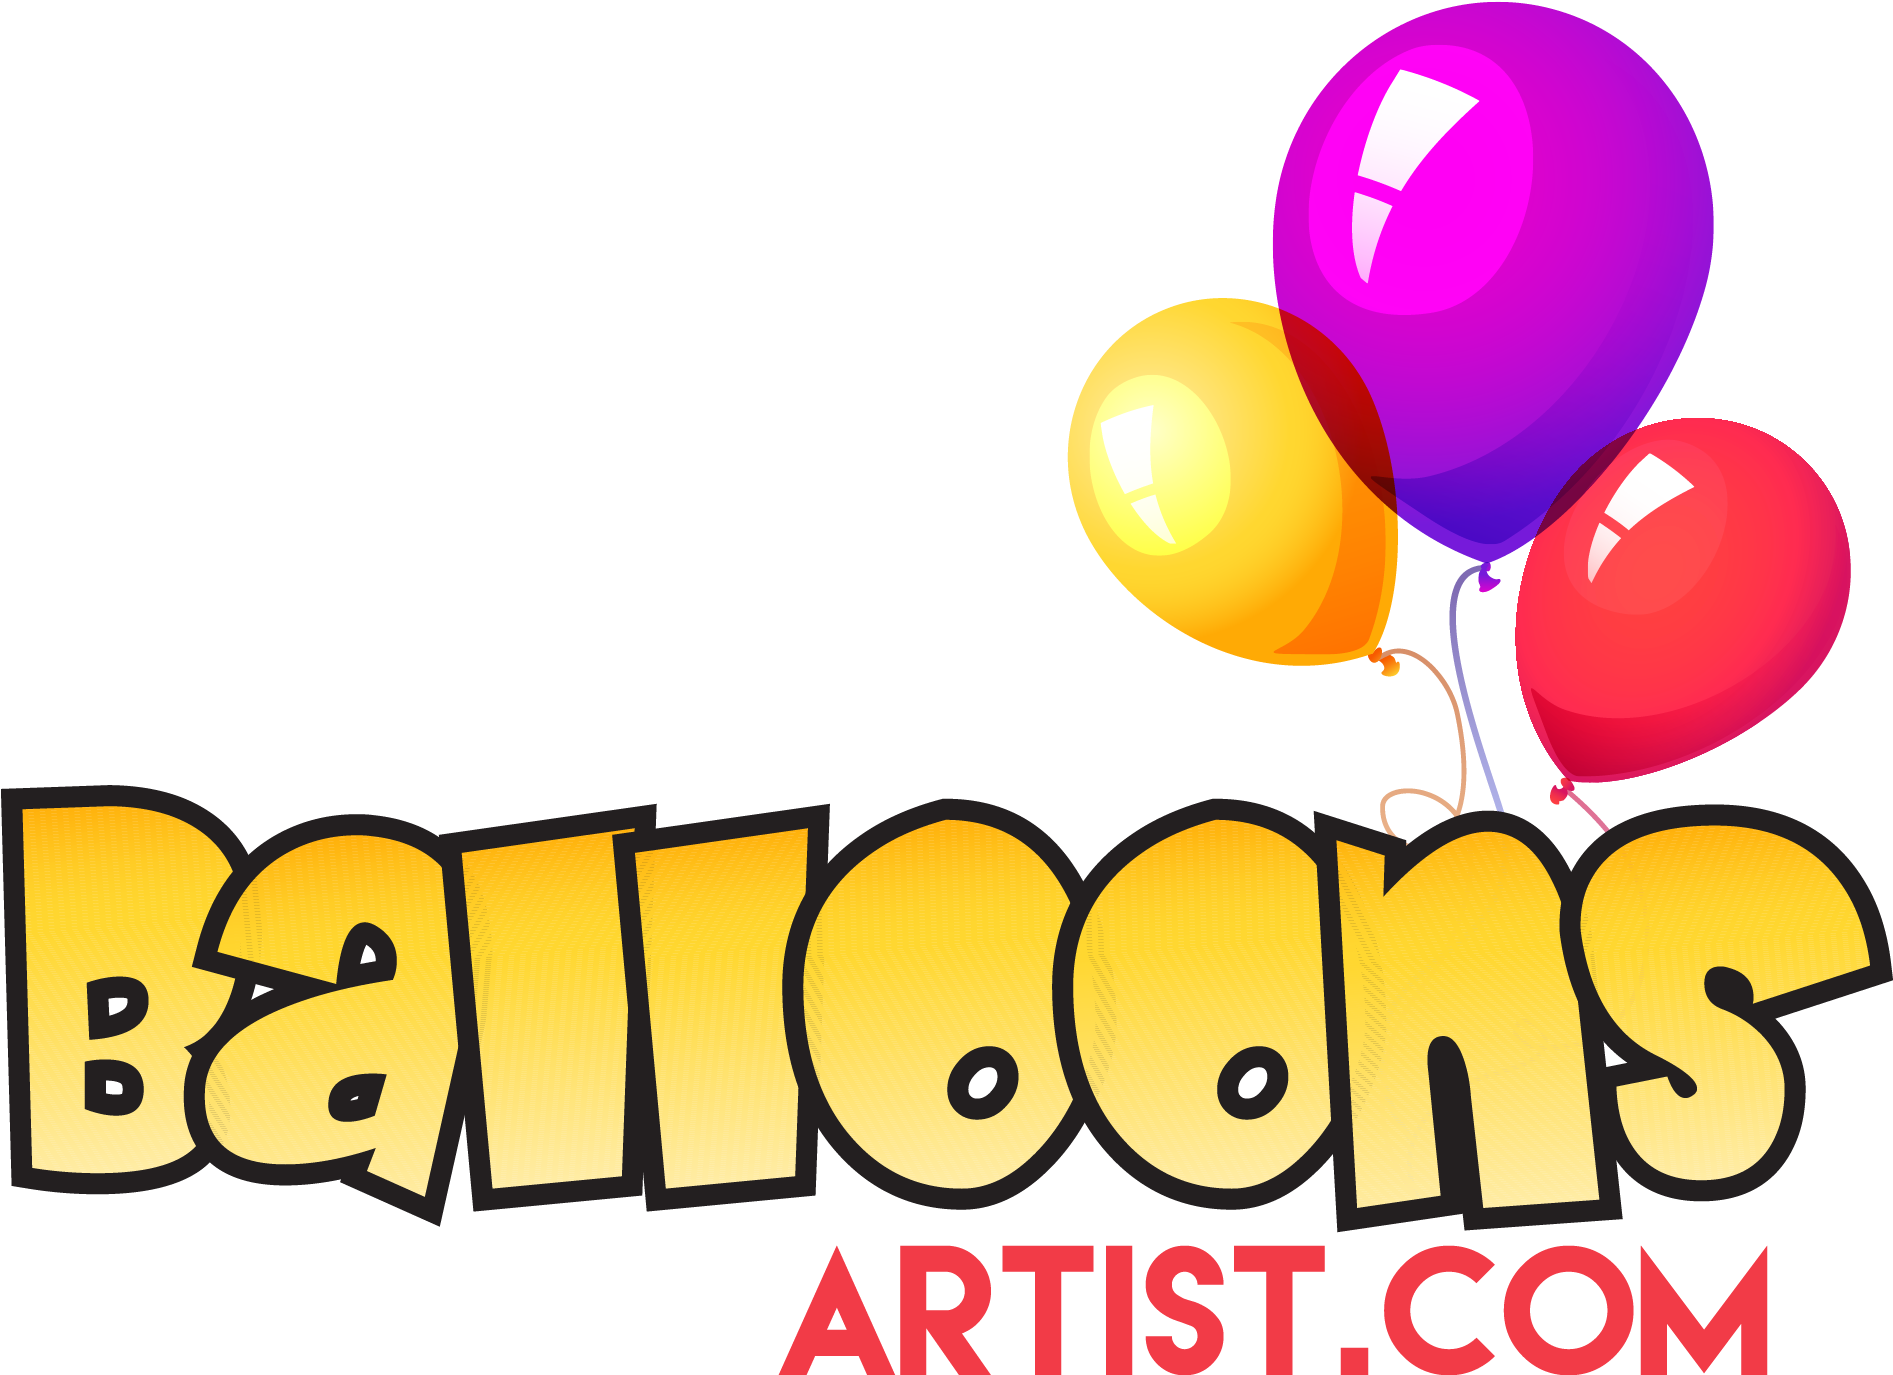 Balloons Artist - Artist (2016x1461)